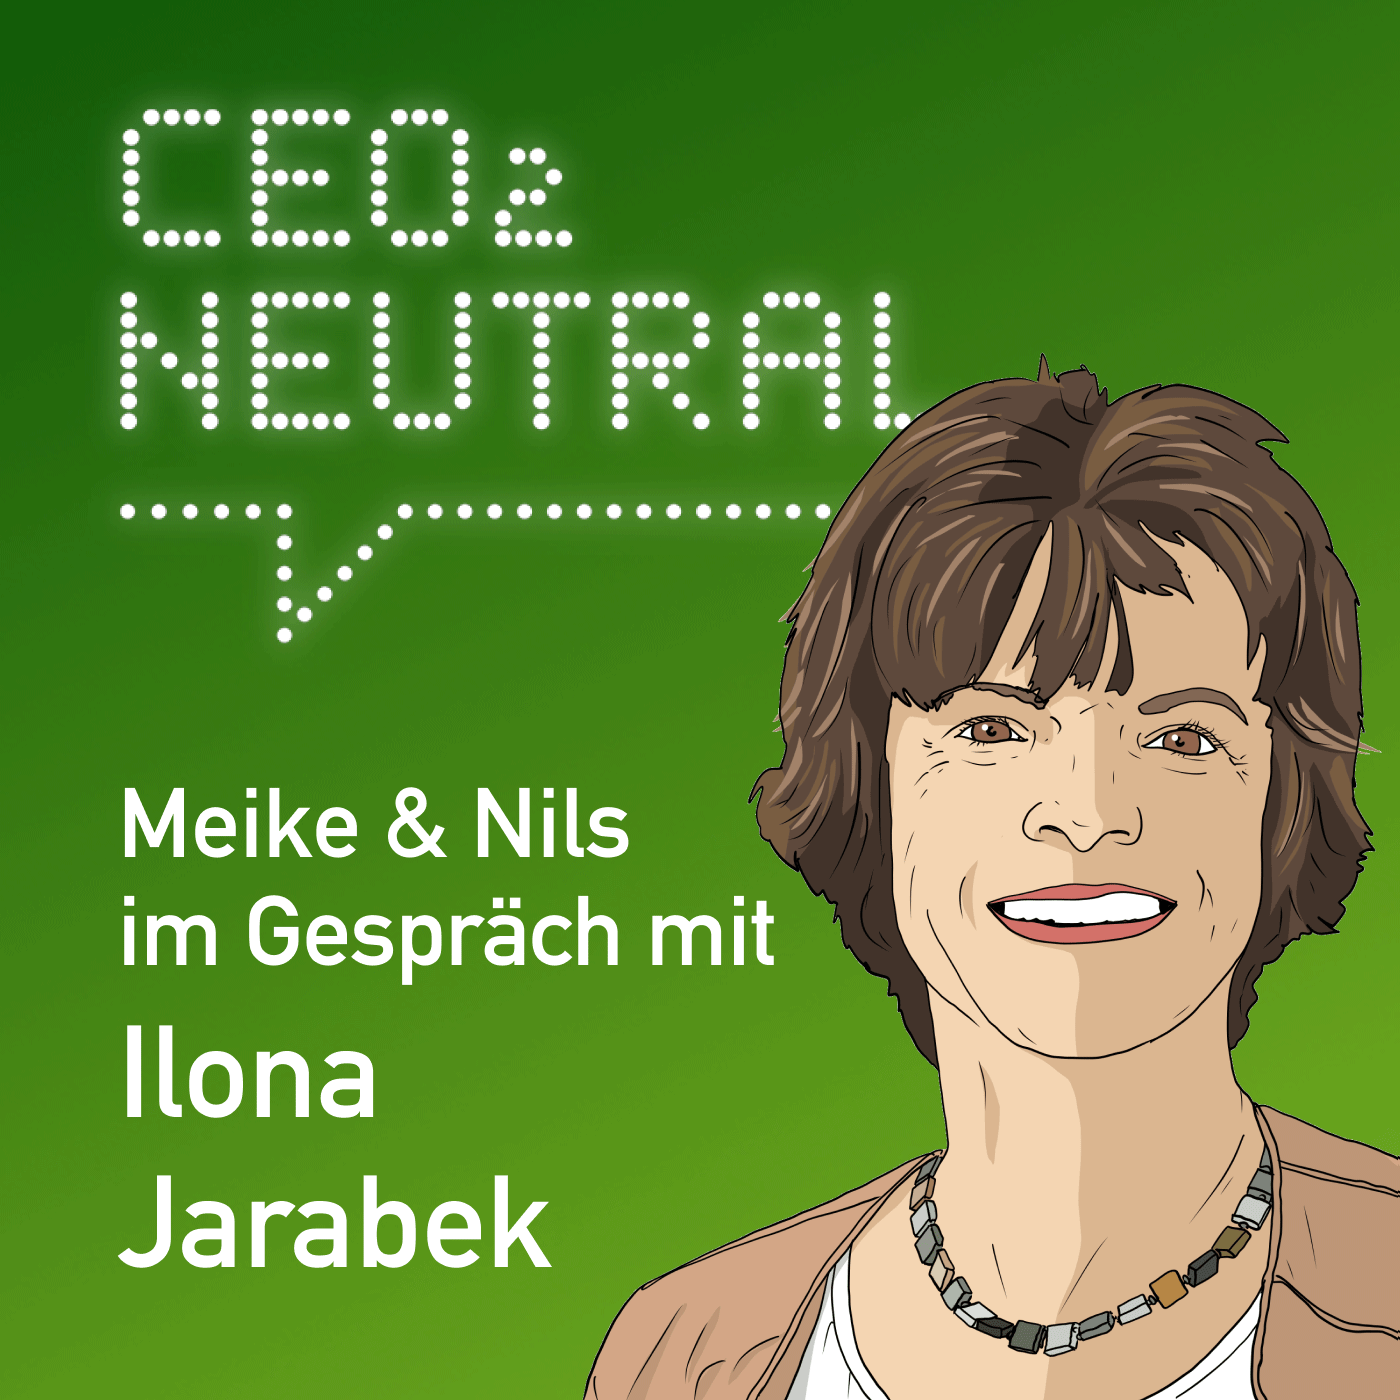 Für mehr kulturelle Nachhaltigkeit und nachhaltige Events | mit Ilona Jarabek - Musik- und Kongresshalle Lübeck (MUK)